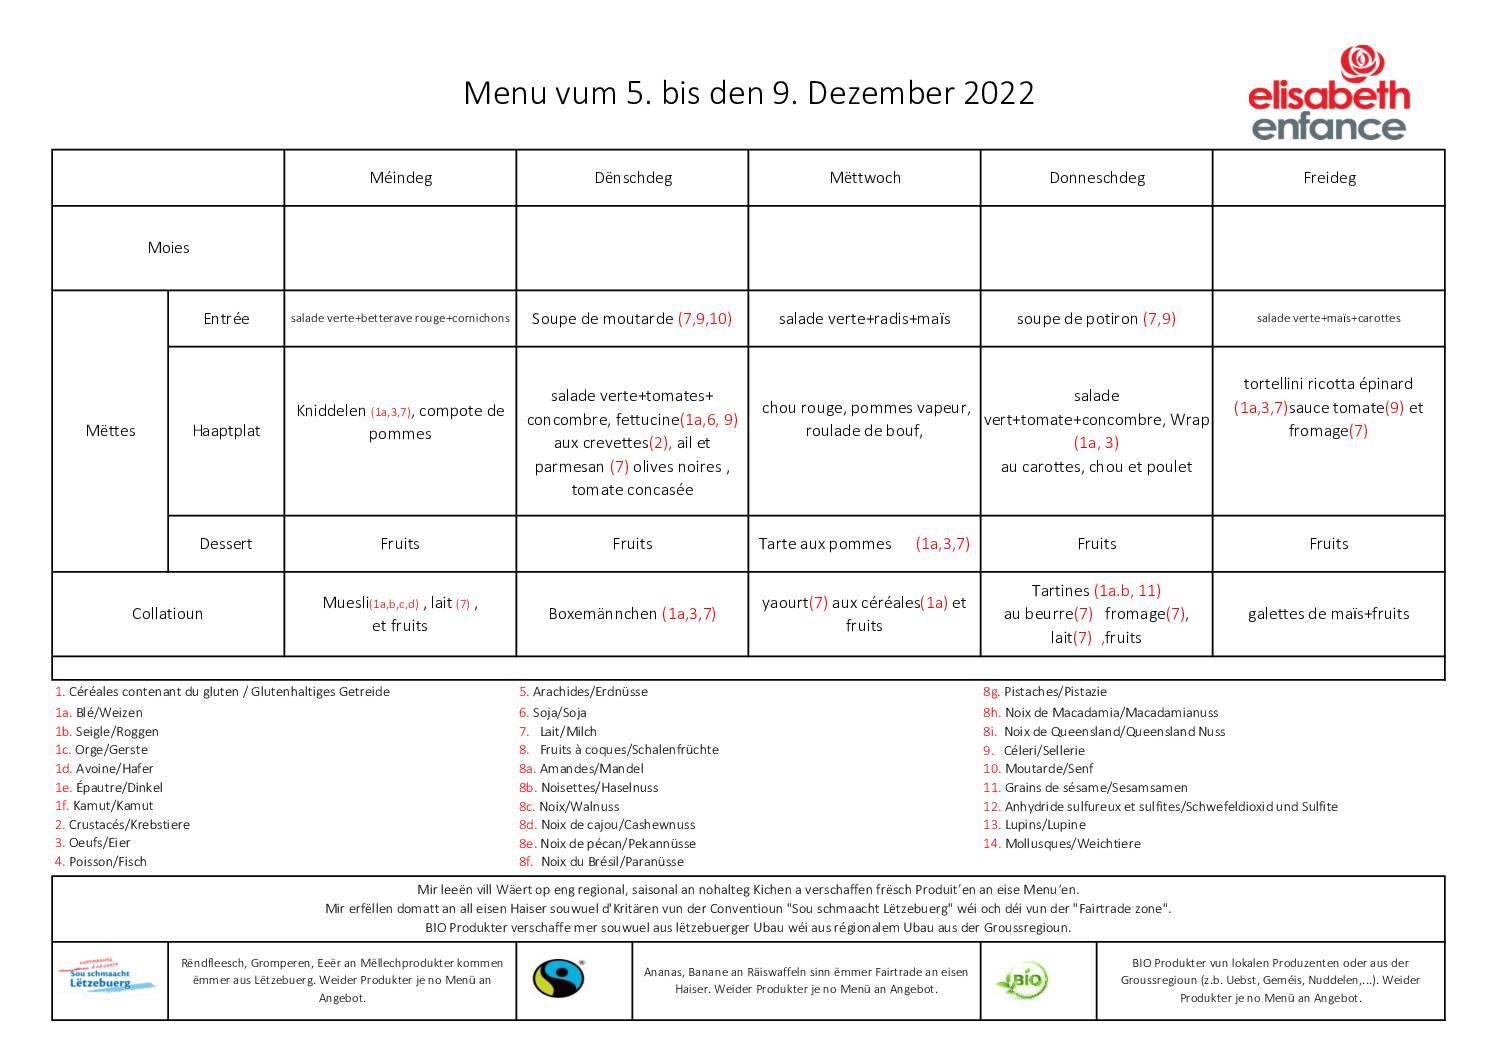 menus de la semaine du 5 au 9 décembre 2022